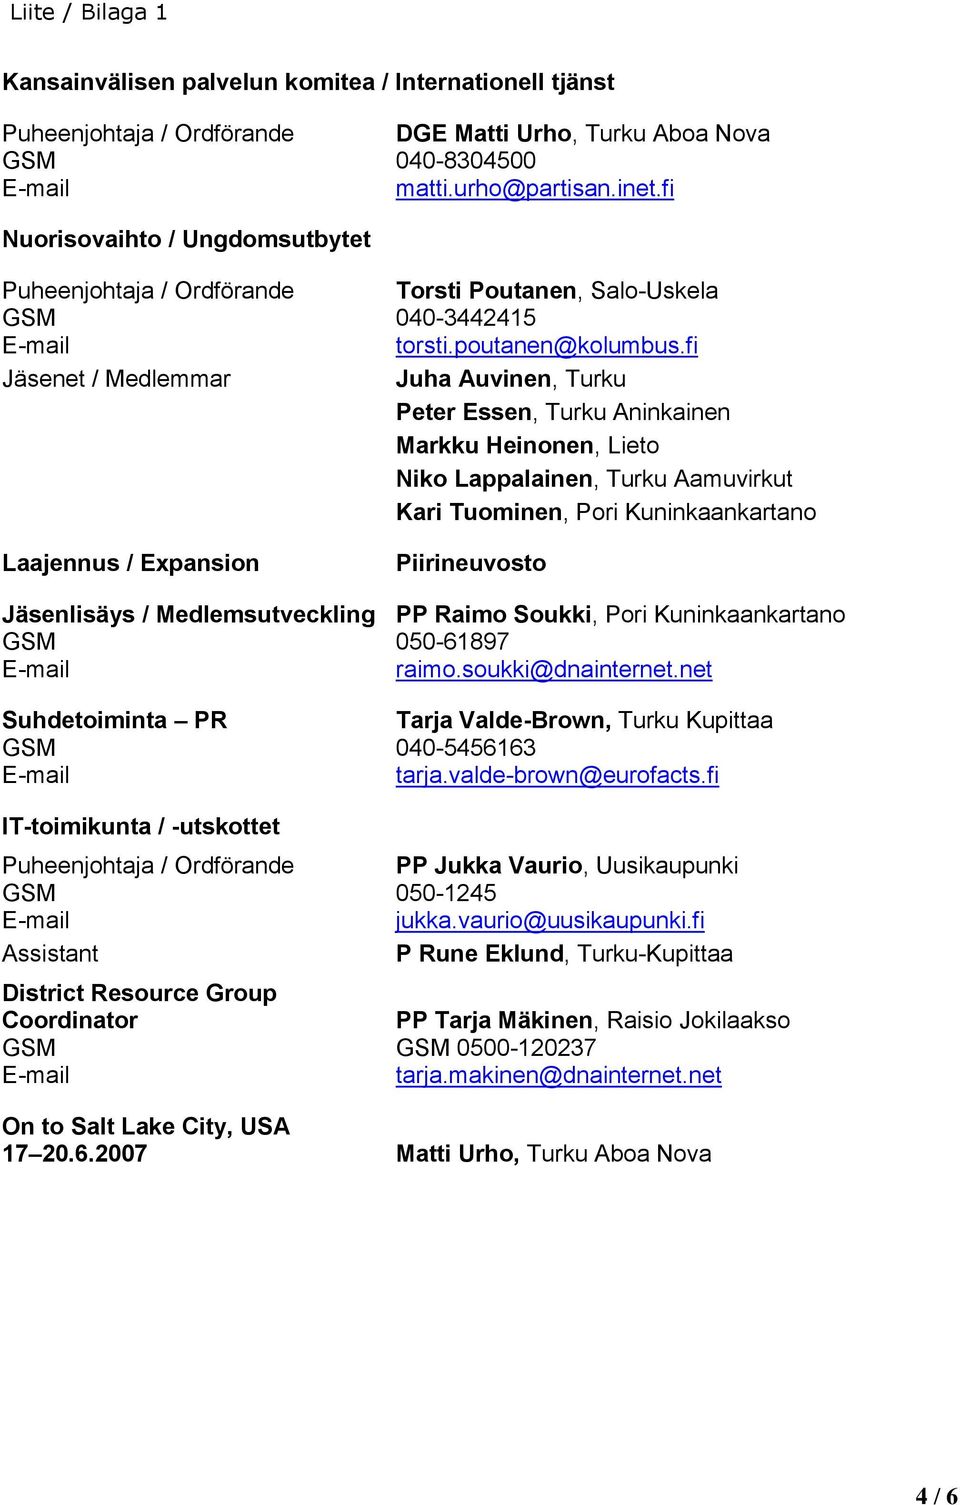 fi Jäsenet / Medlemmar Juha Auvinen, Turku Peter Essen, Turku Aninkainen Markku Heinonen, Lieto Niko Lappalainen, Turku Aamuvirkut Kari Tuominen, Pori Kuninkaankartano Laajennus / Expansion